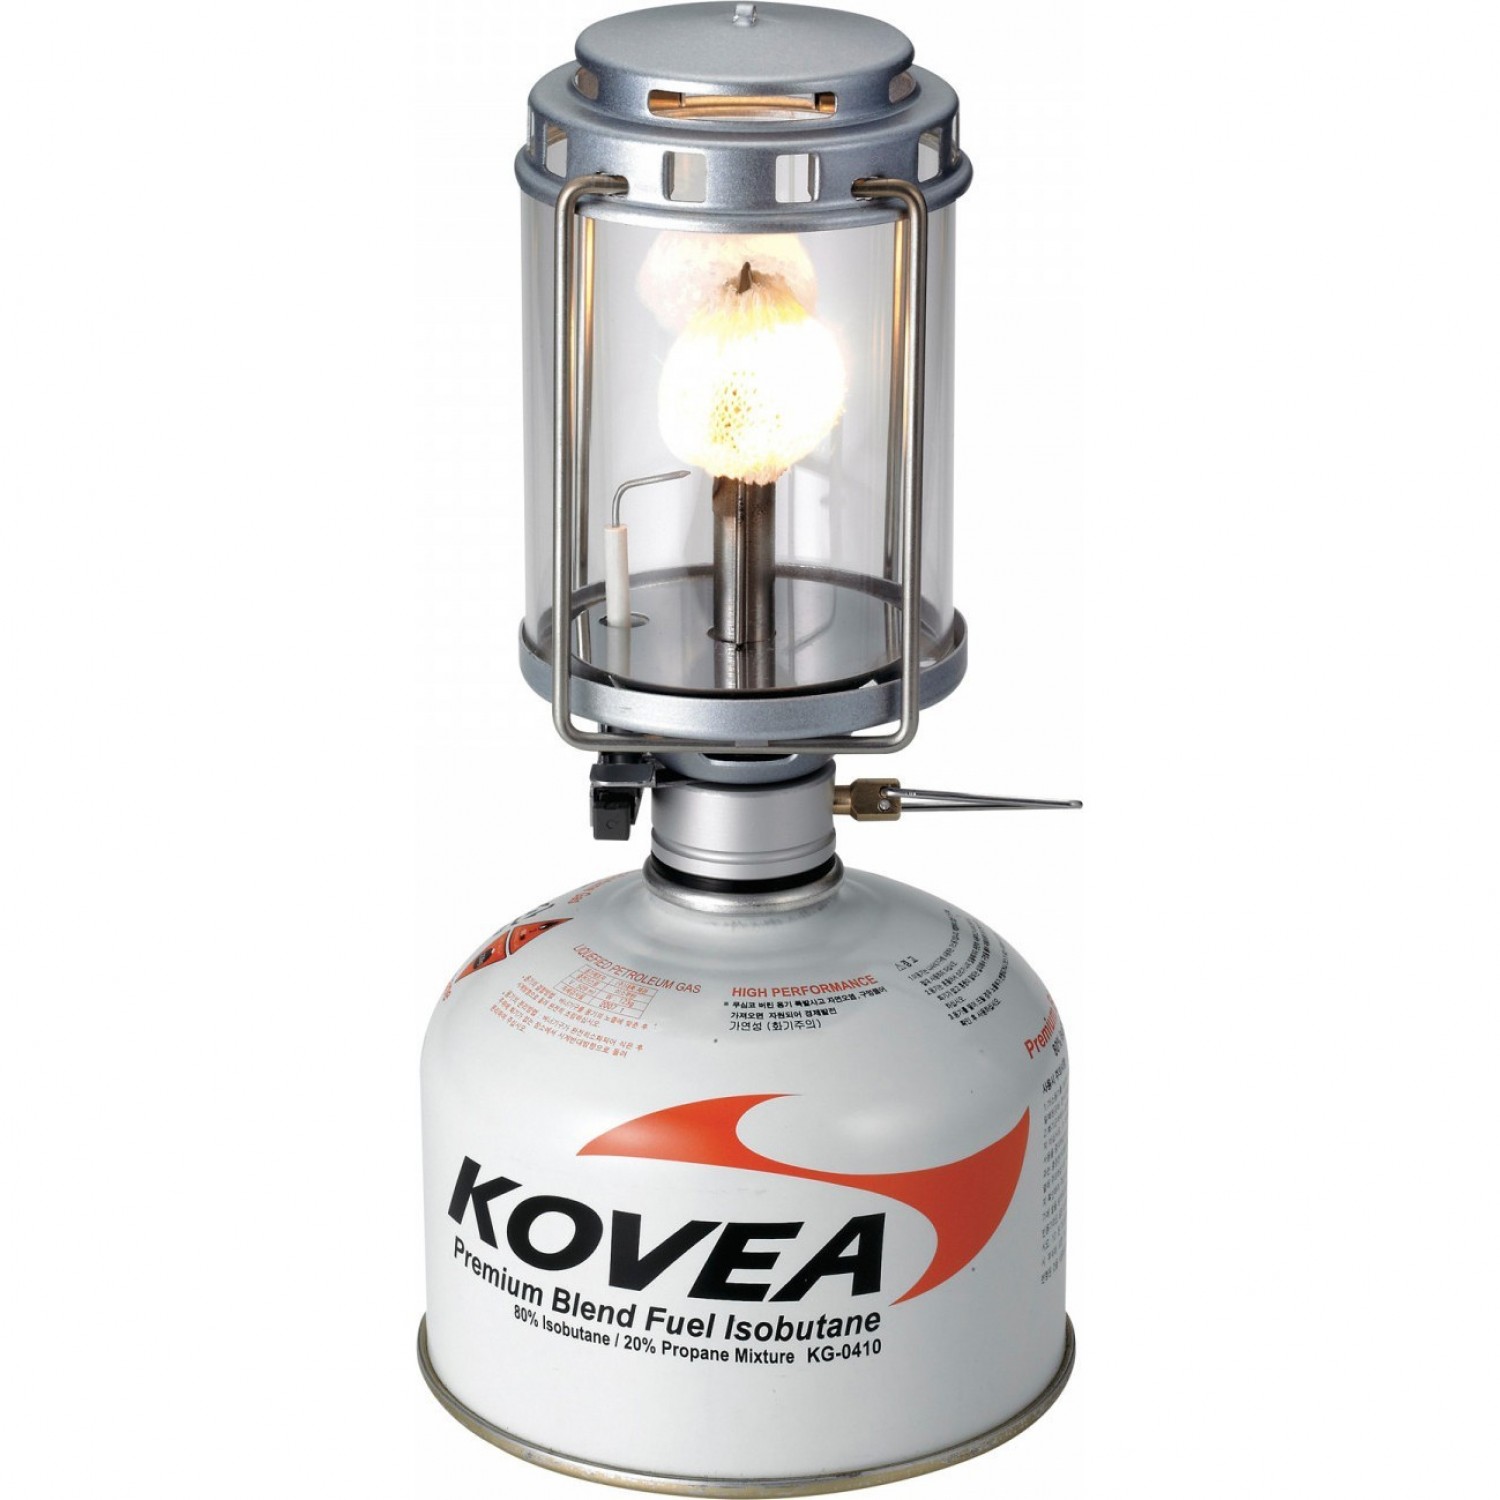 Газовая лампа KOVEA Firefly KL-805